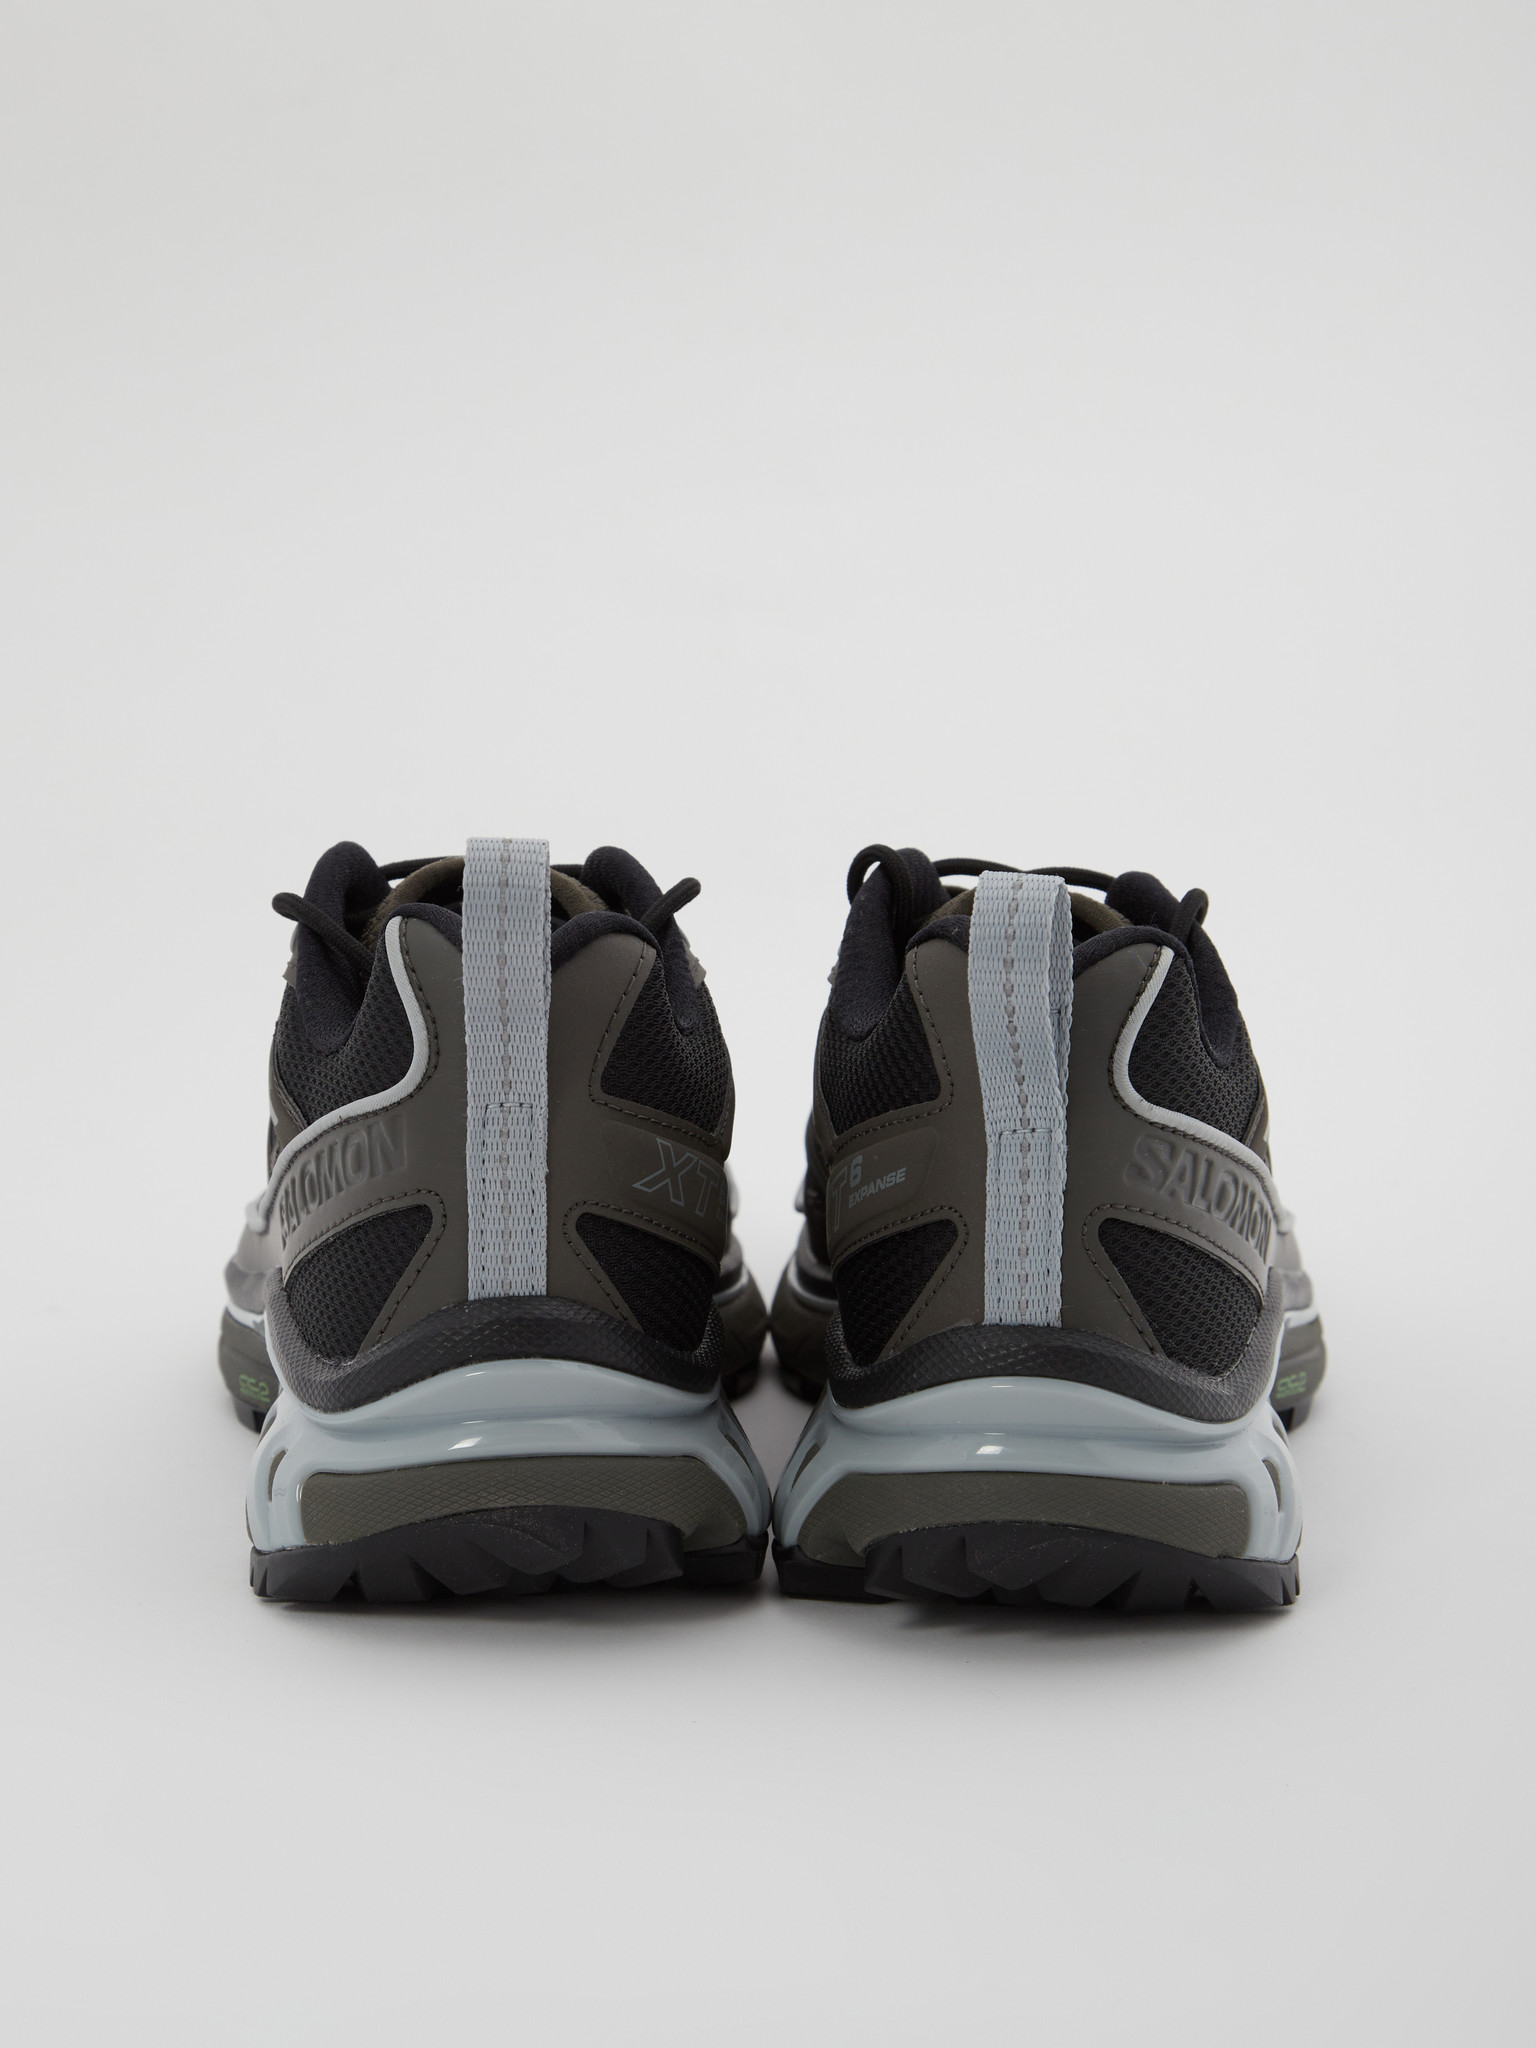 Salomon Advanced: XT-6 EXPANSE Beluga Shoes, Men's Designer Clothes